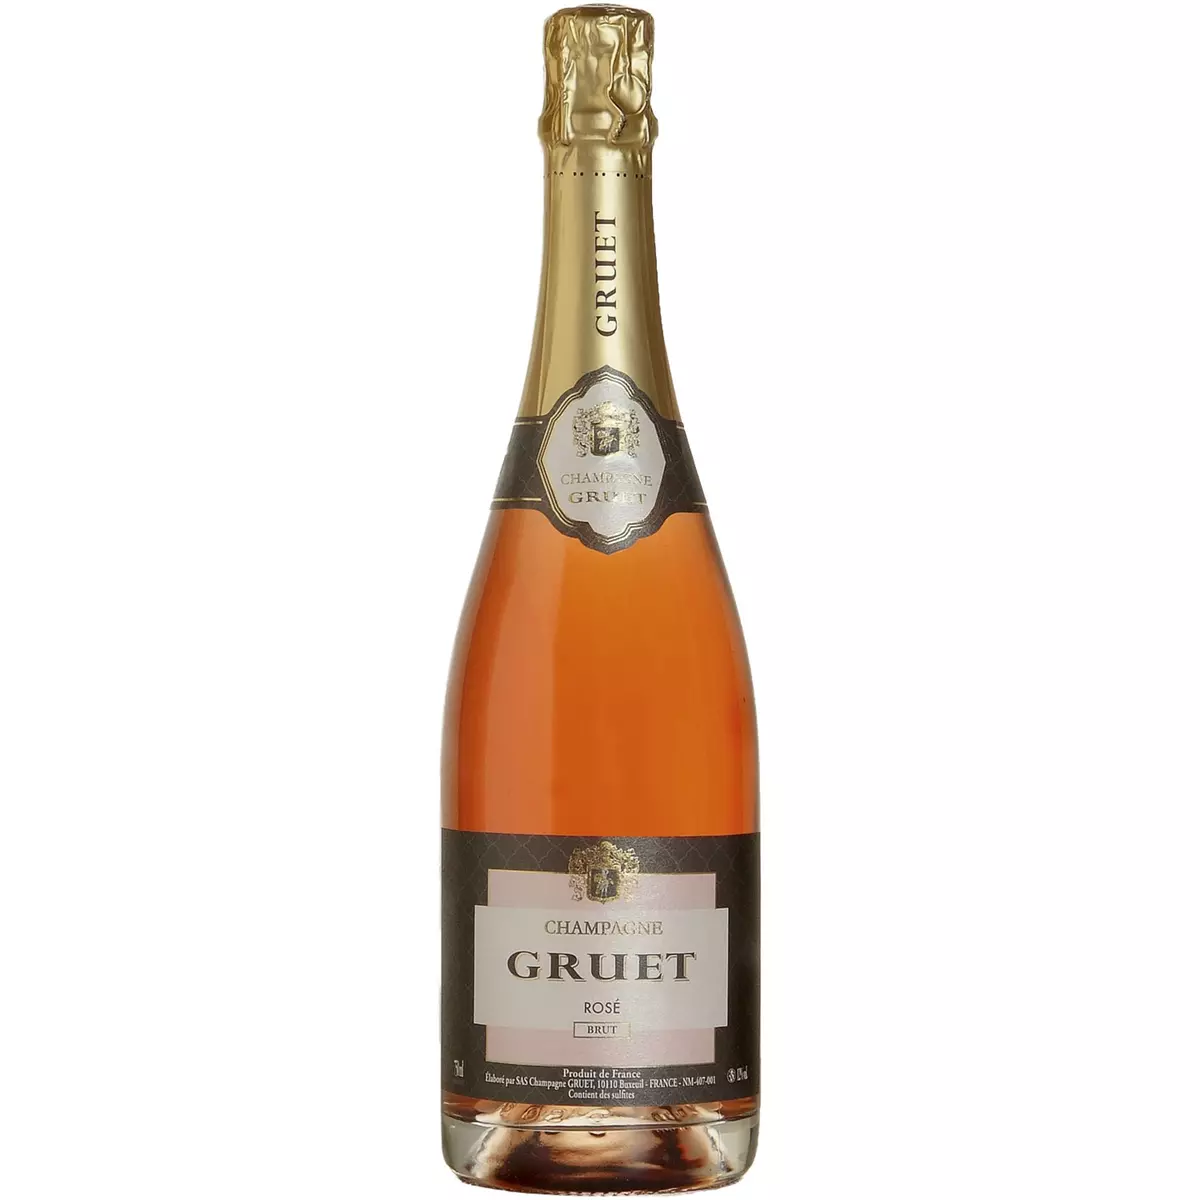 GRUET AOP Champagne brut rosé 75cl